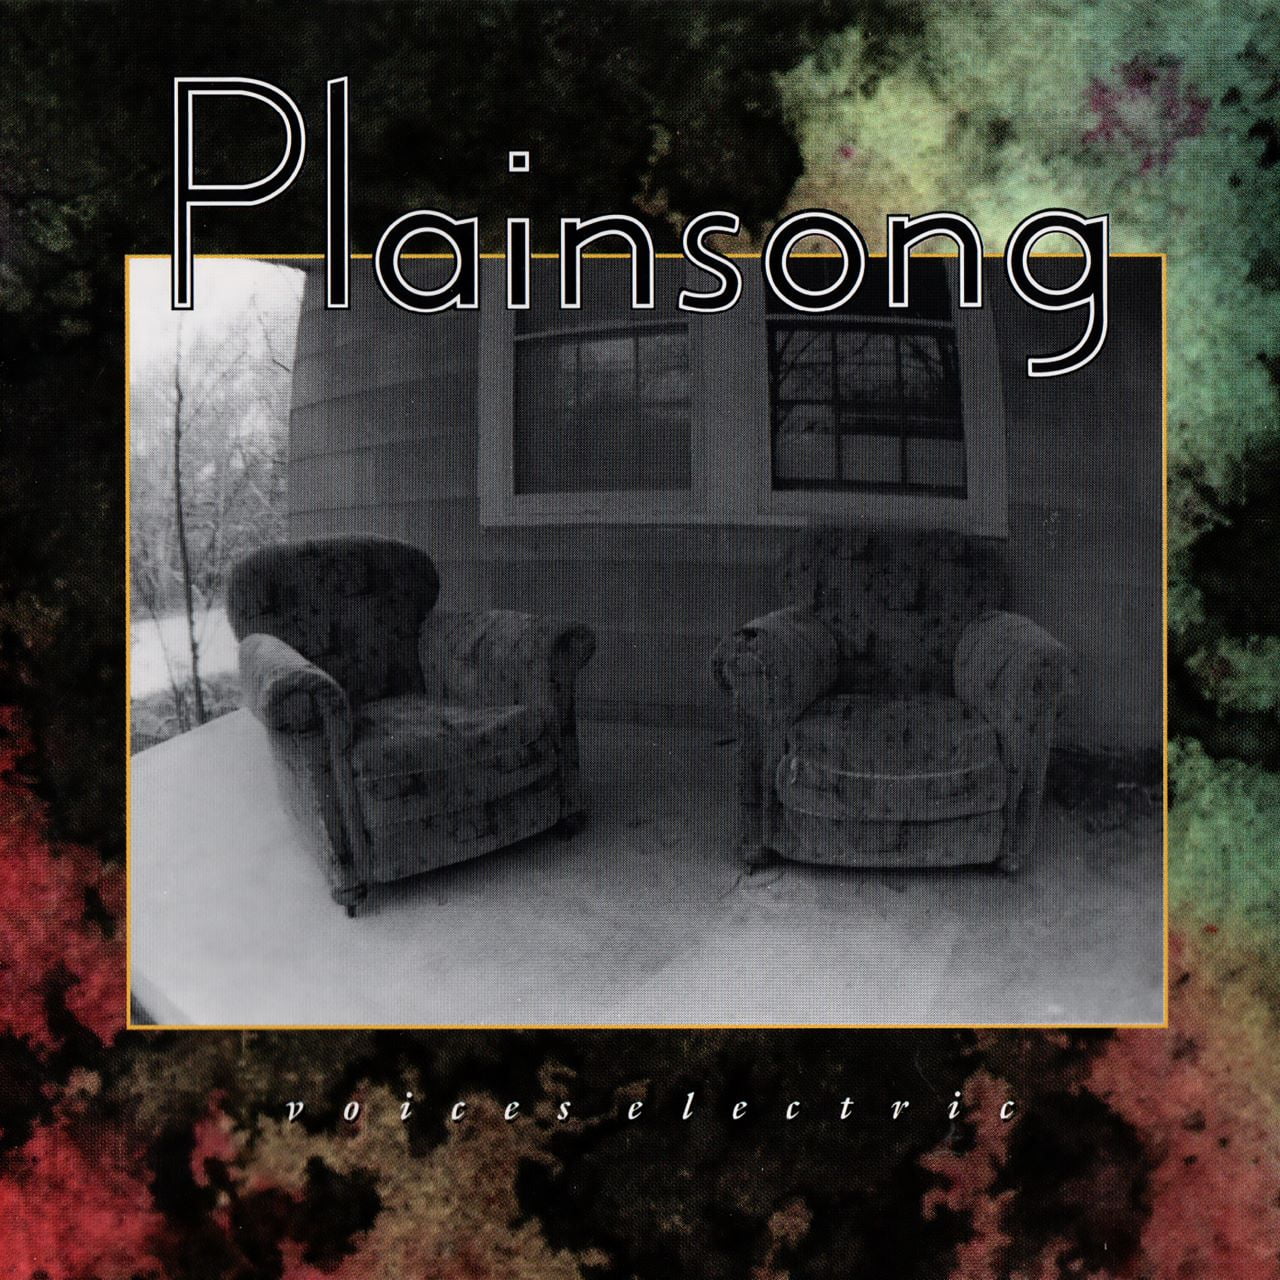 Plainsong – Voices Electric cover album